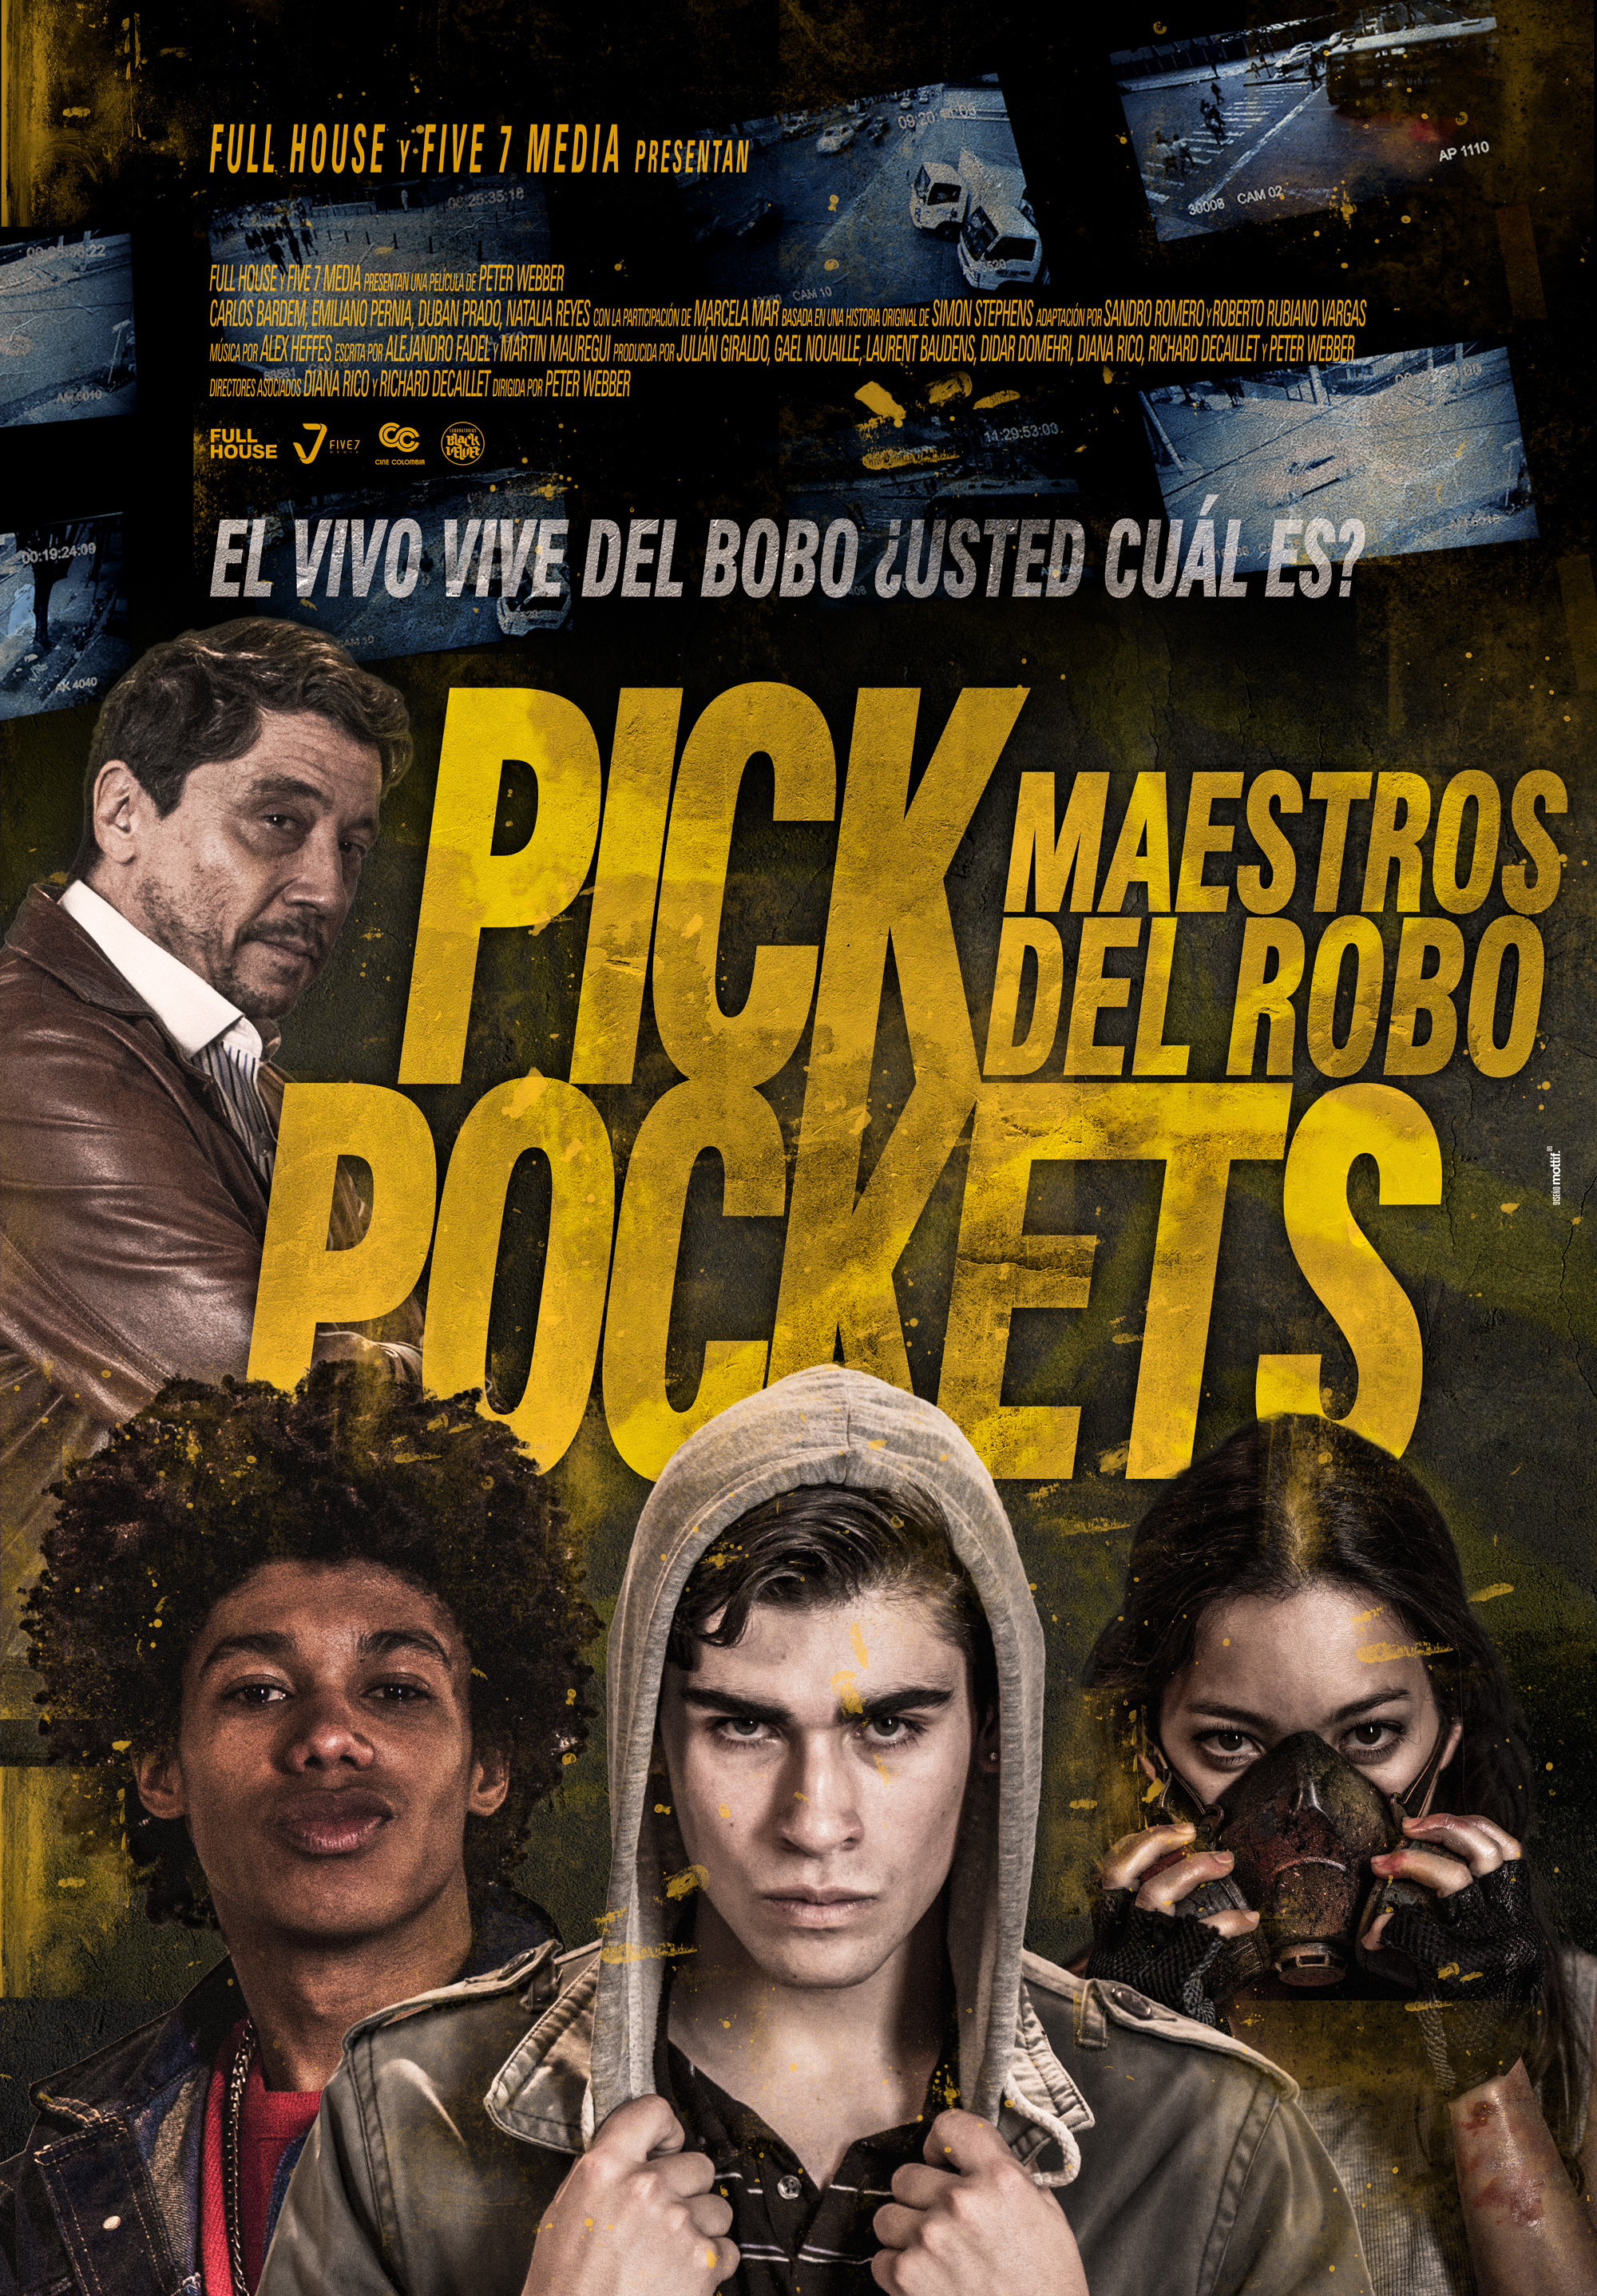 Pickpockets (2018) Screenshot 3